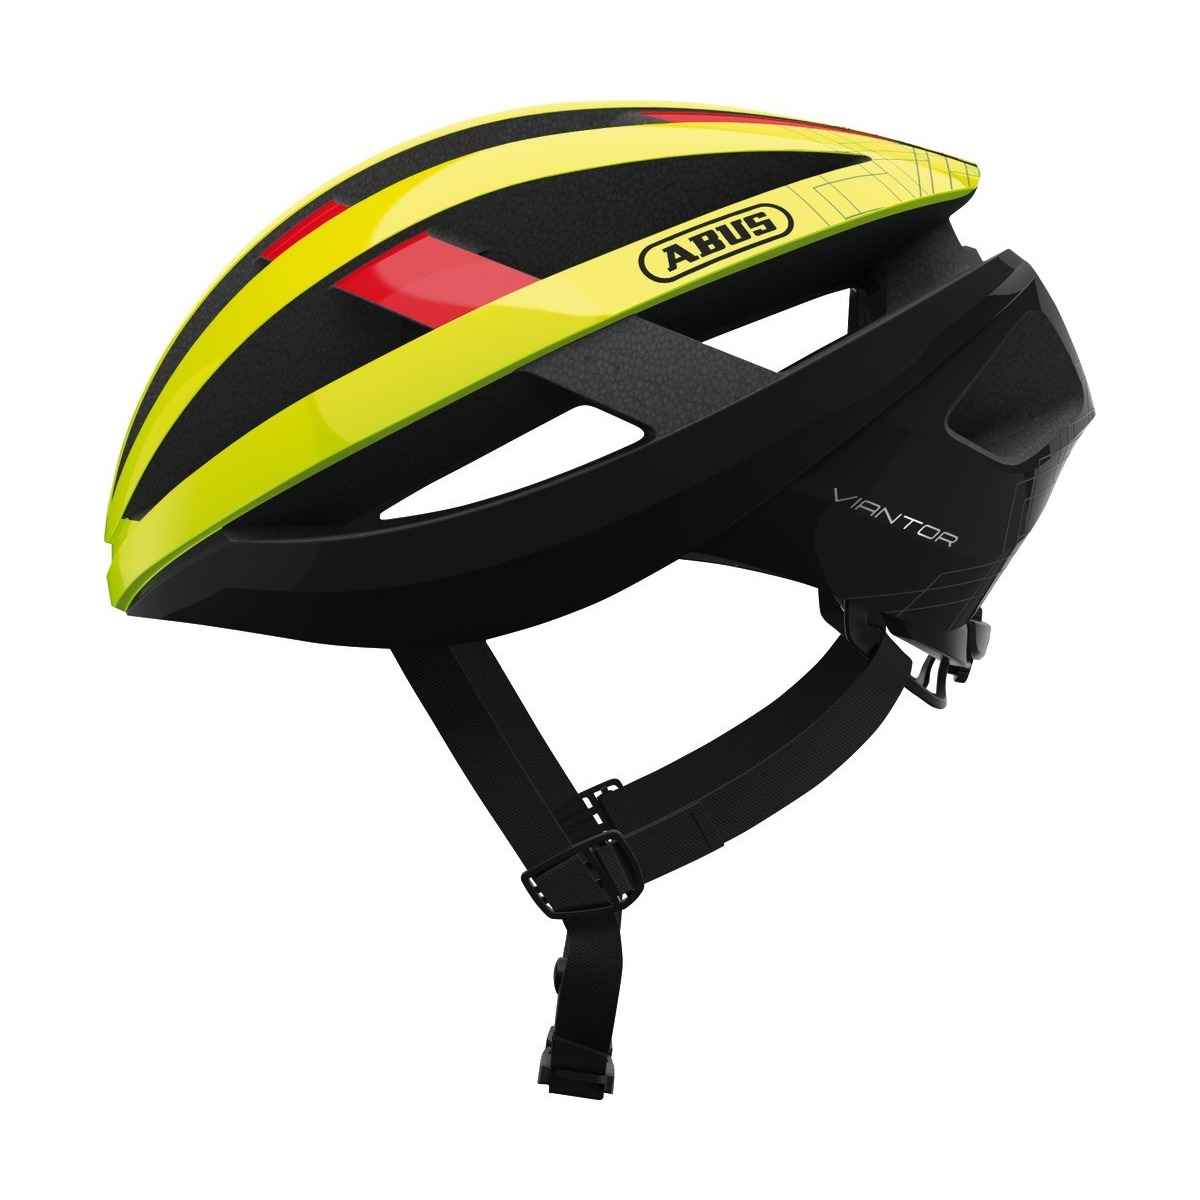 helmet VIANTOR neon, ABUS (black/yellow/red)